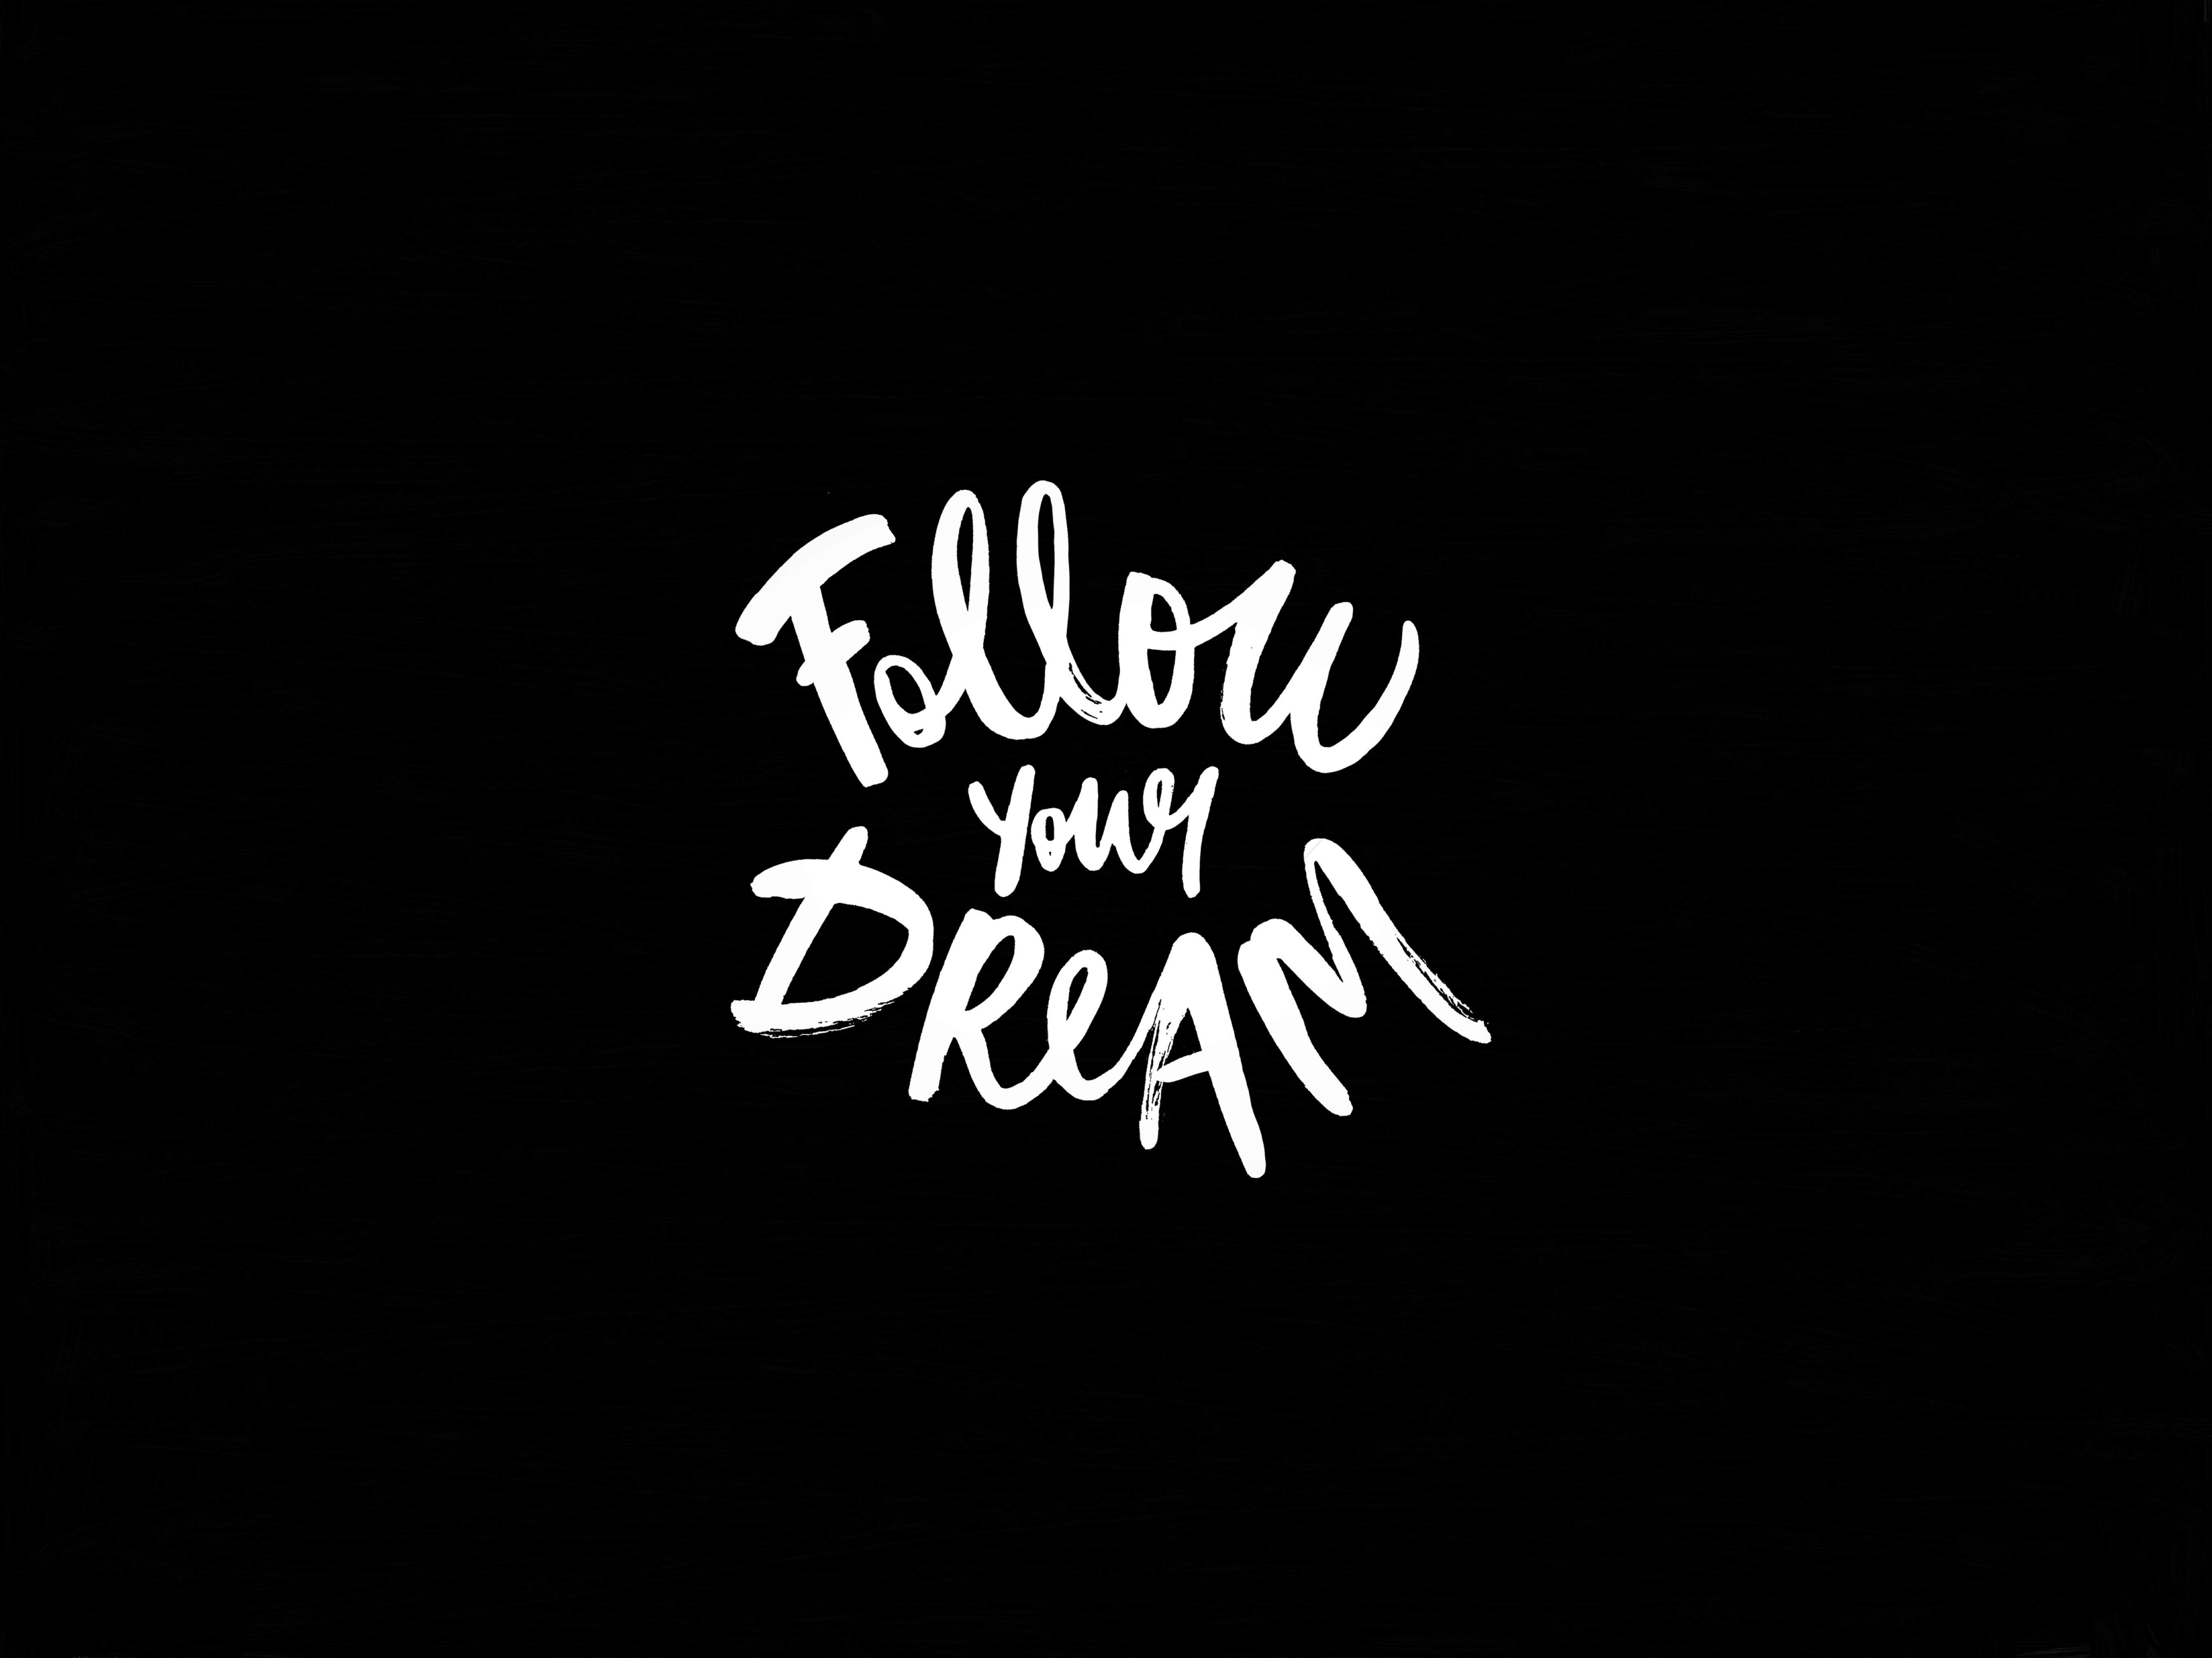 follow your dream text, inscription, motivation, illustration